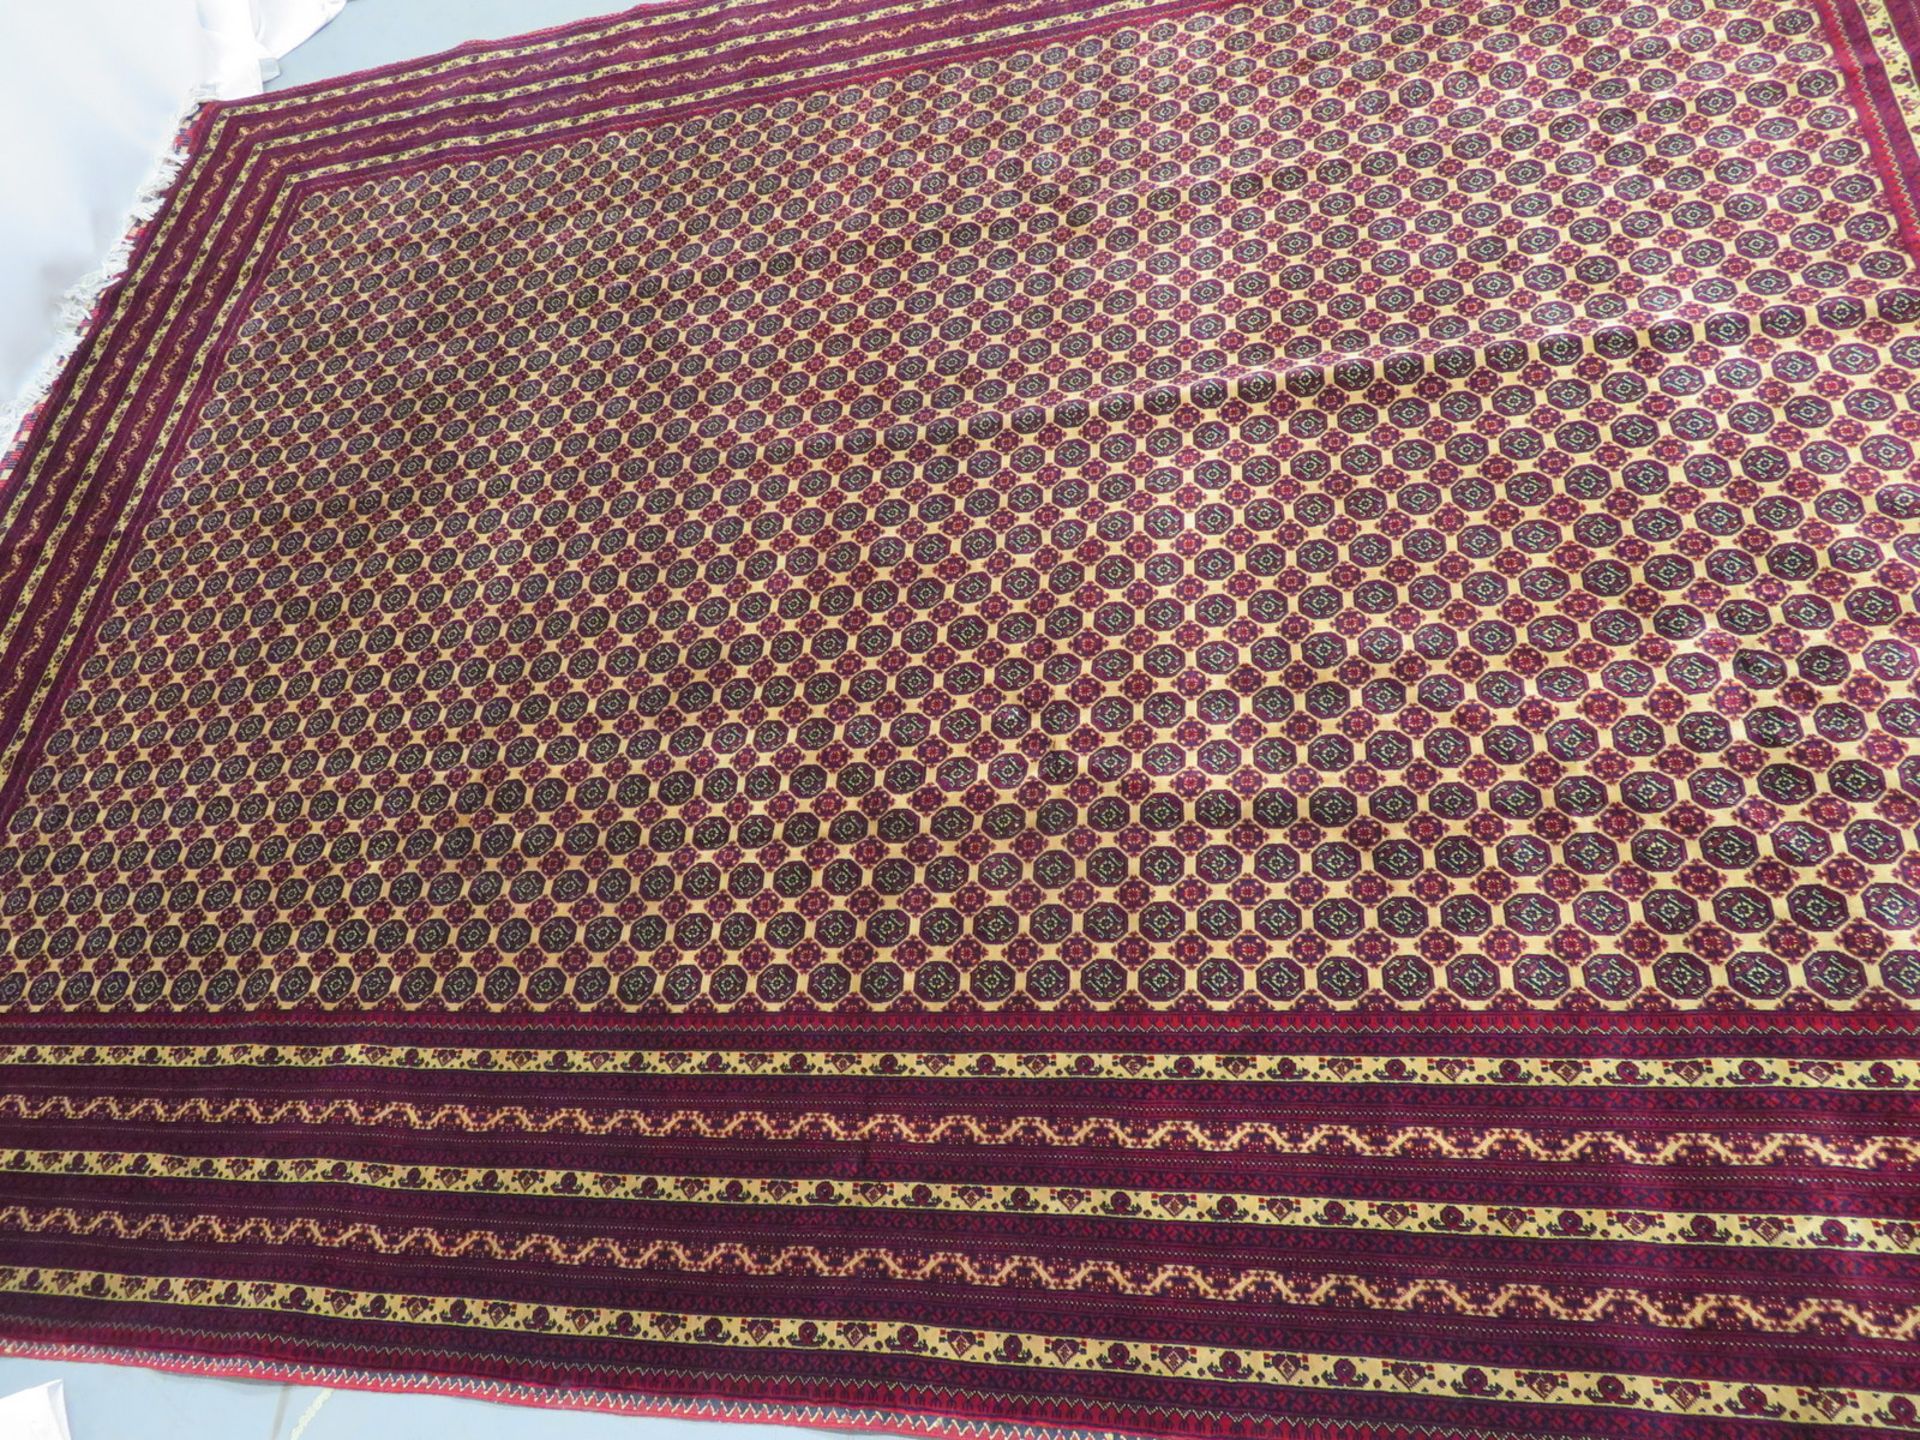 Khal Mohammadi 'Khawaja Roshnai' Afghan rug measures 3.5m L x 2.5m W - Image 4 of 13